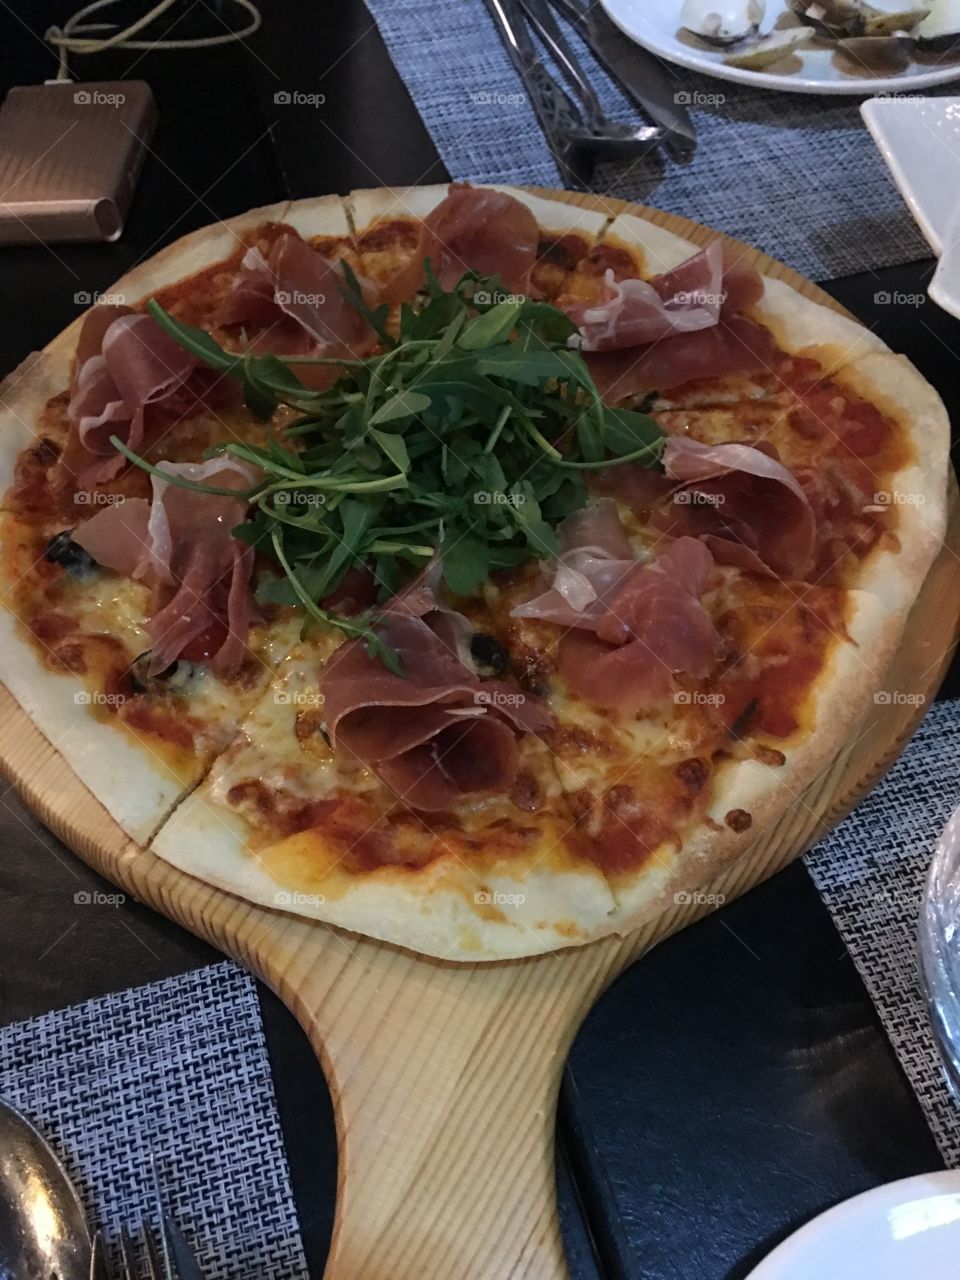 Parma ham pizza